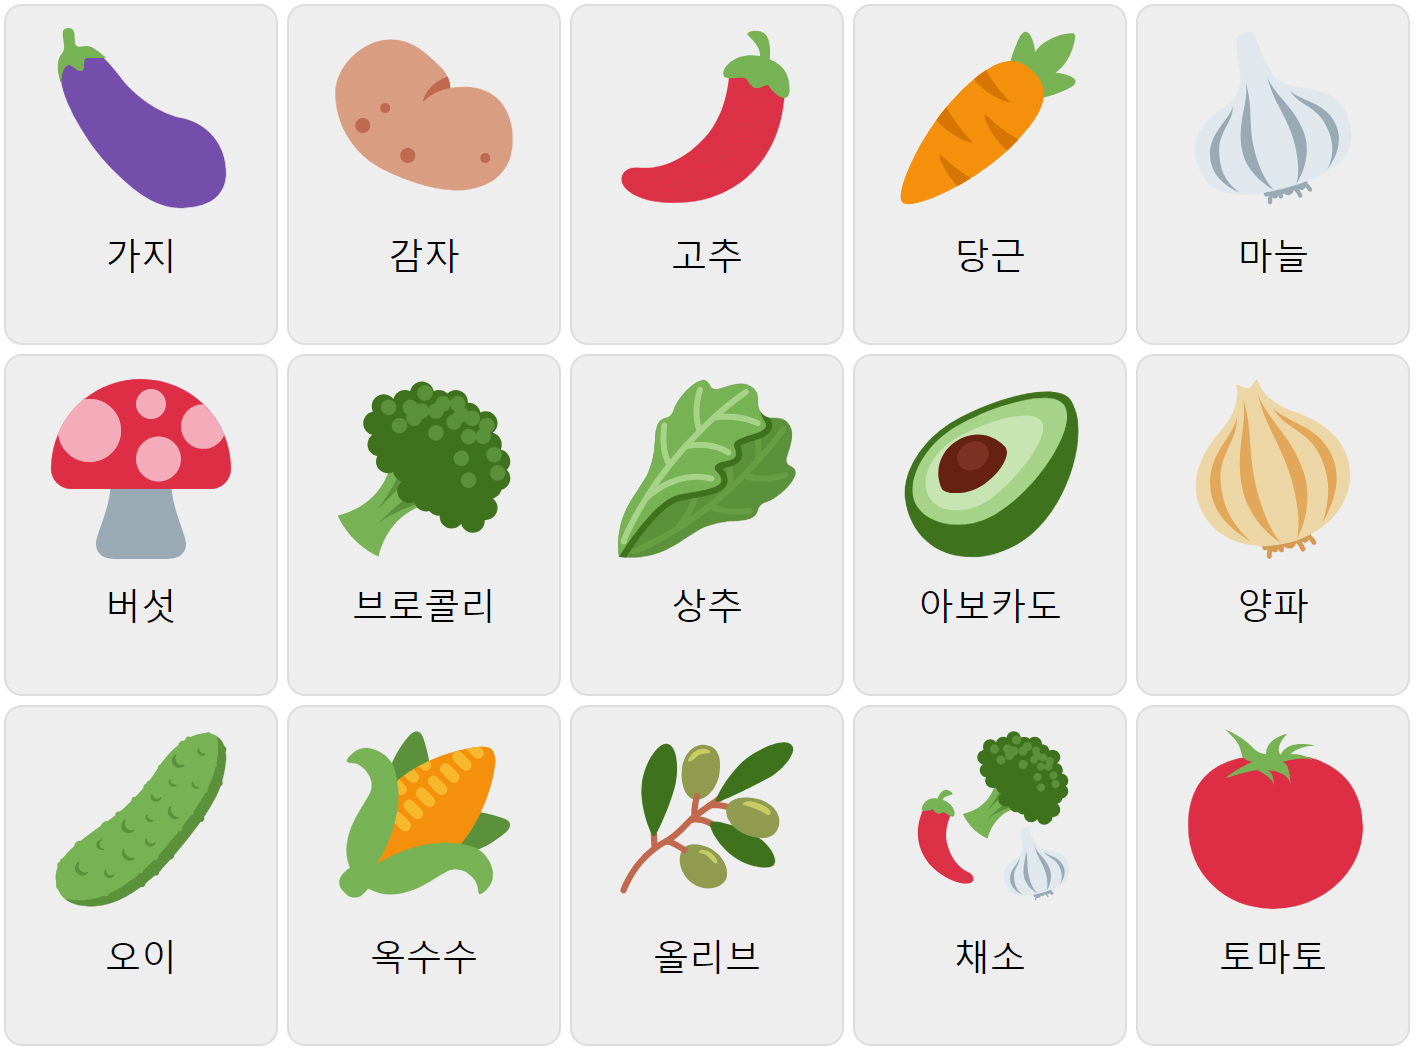 Vegetables in Korean